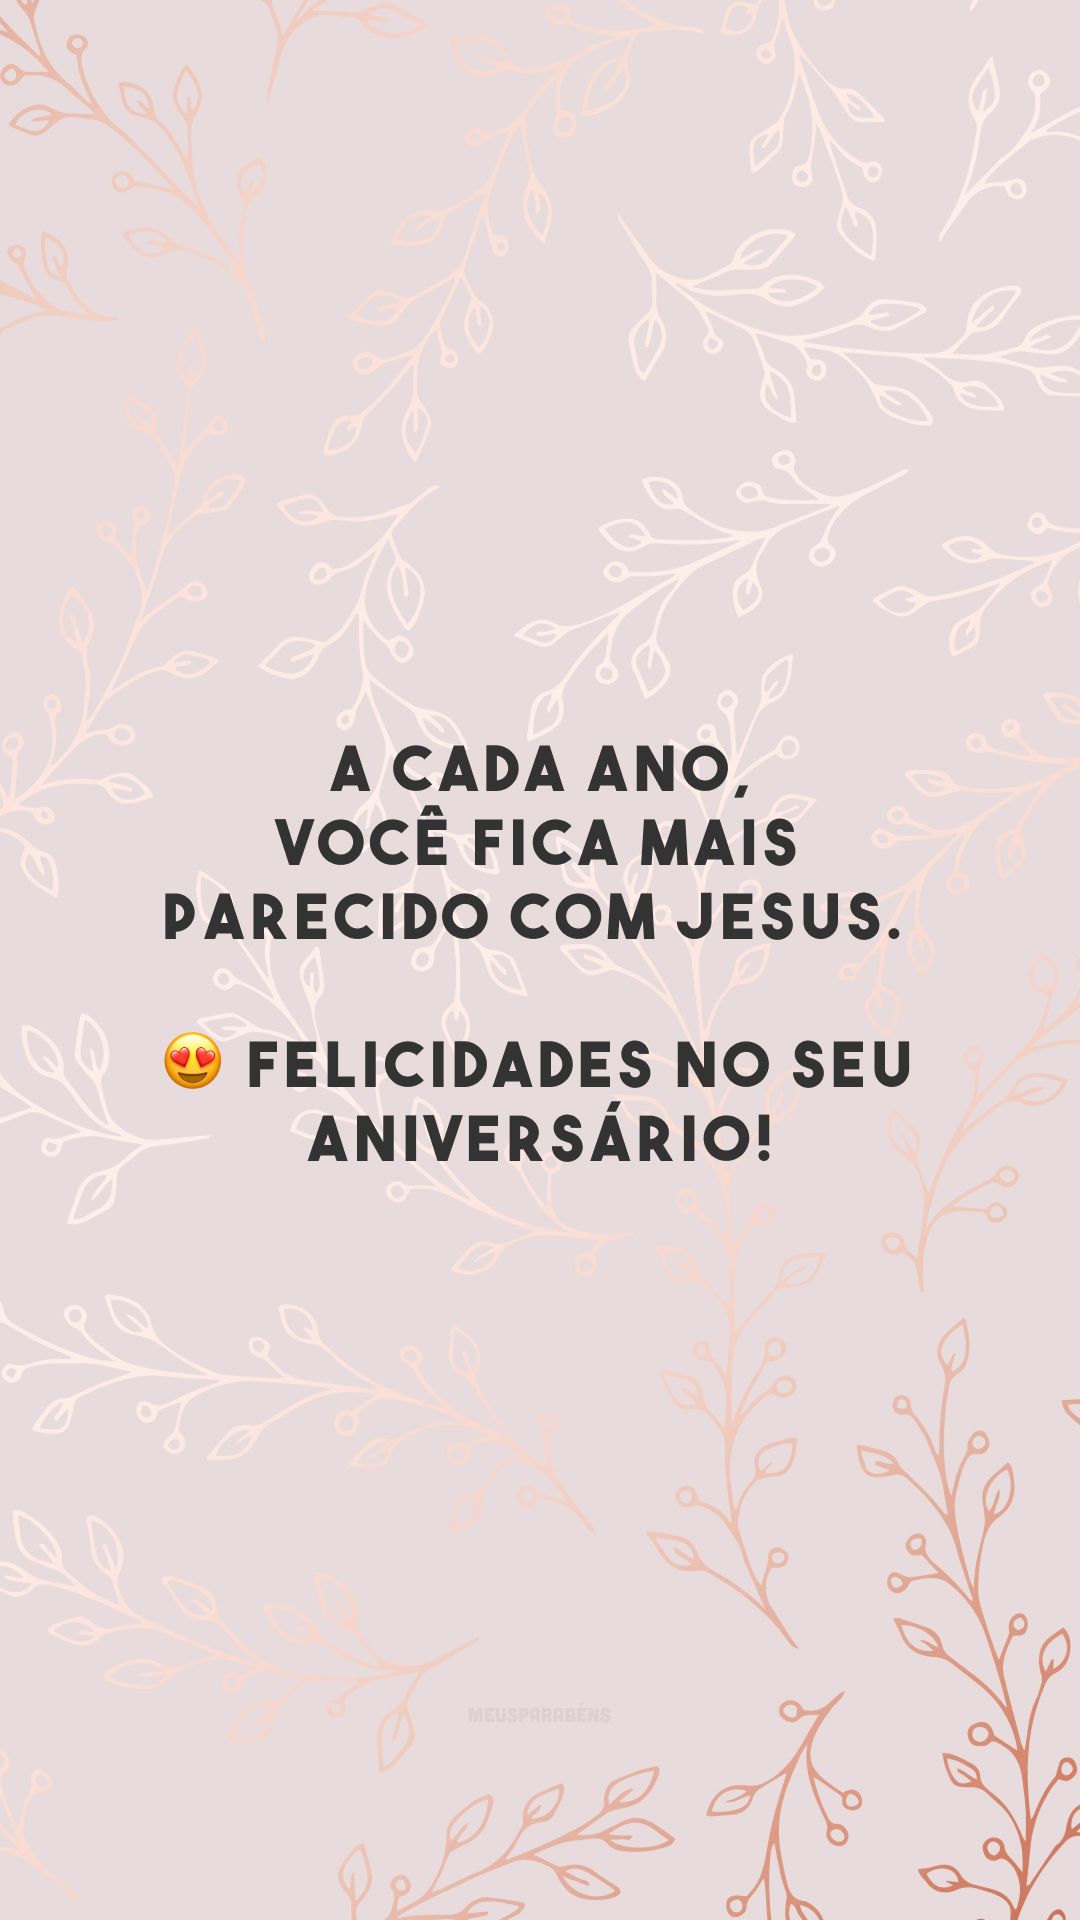 A cada ano, você fica mais parecido com Jesus. 😍 Felicidades no seu aniversário!